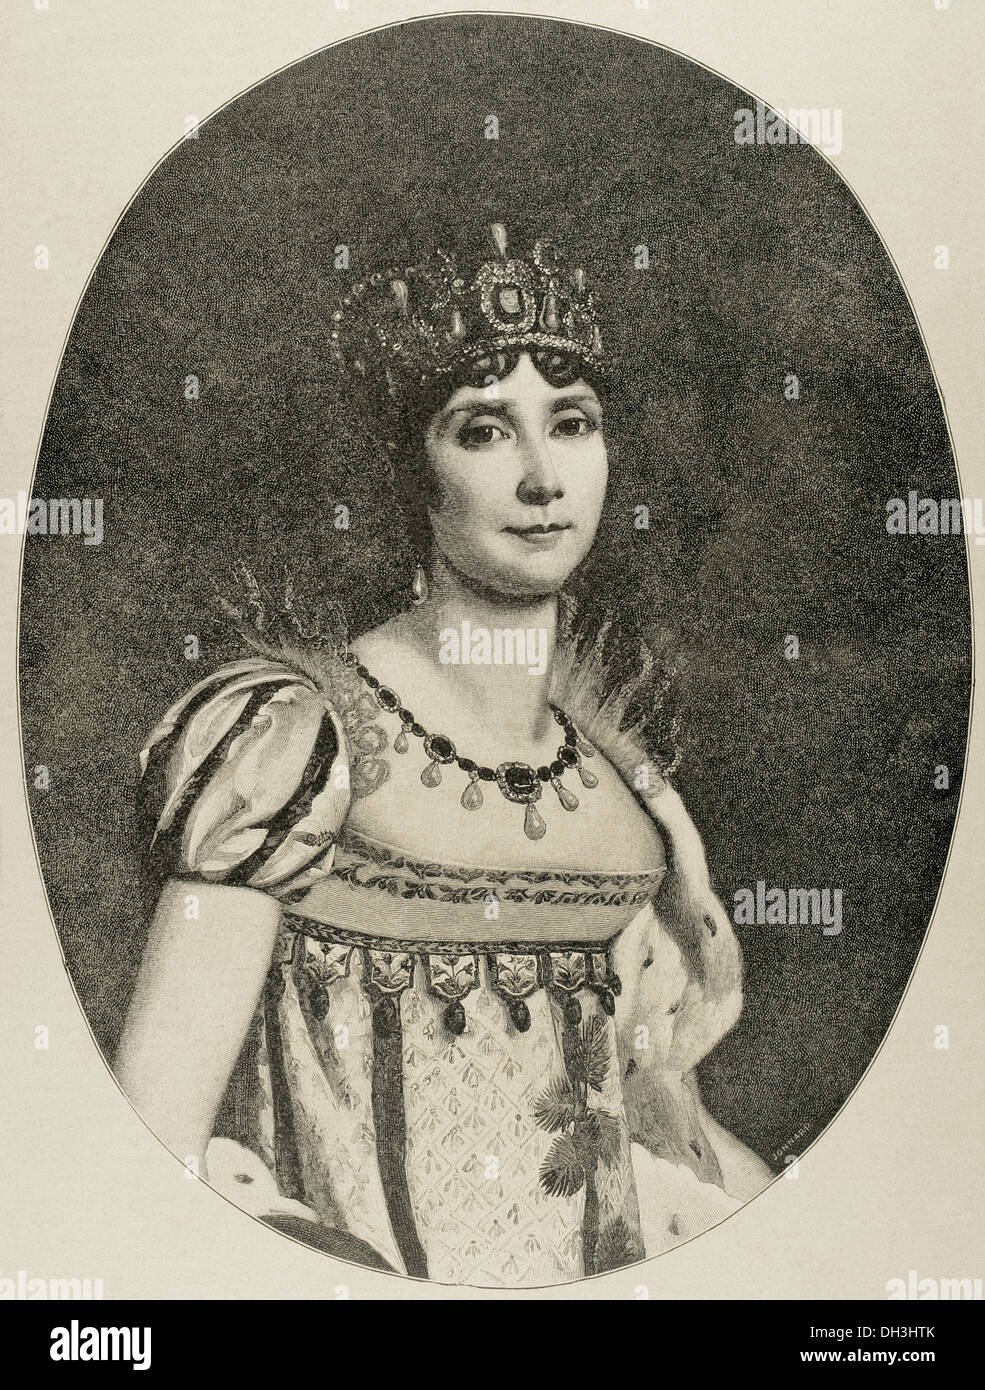 Josephine de Beauharnais (1763-1814). Erste Frau von Napoleon I und Kaiserin der Franzosen. Gravur. Stockfoto